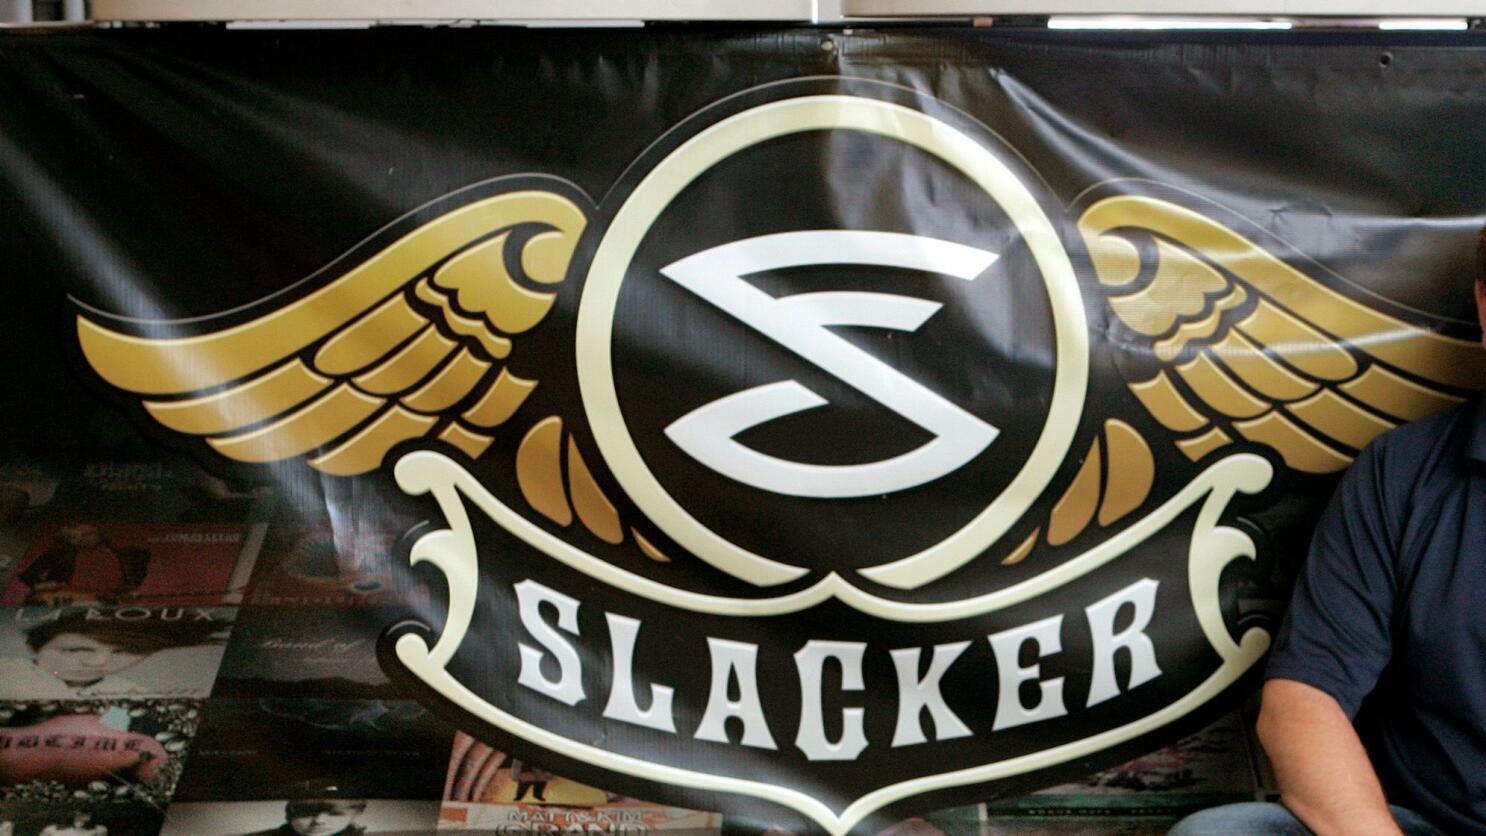 slacker radio logo